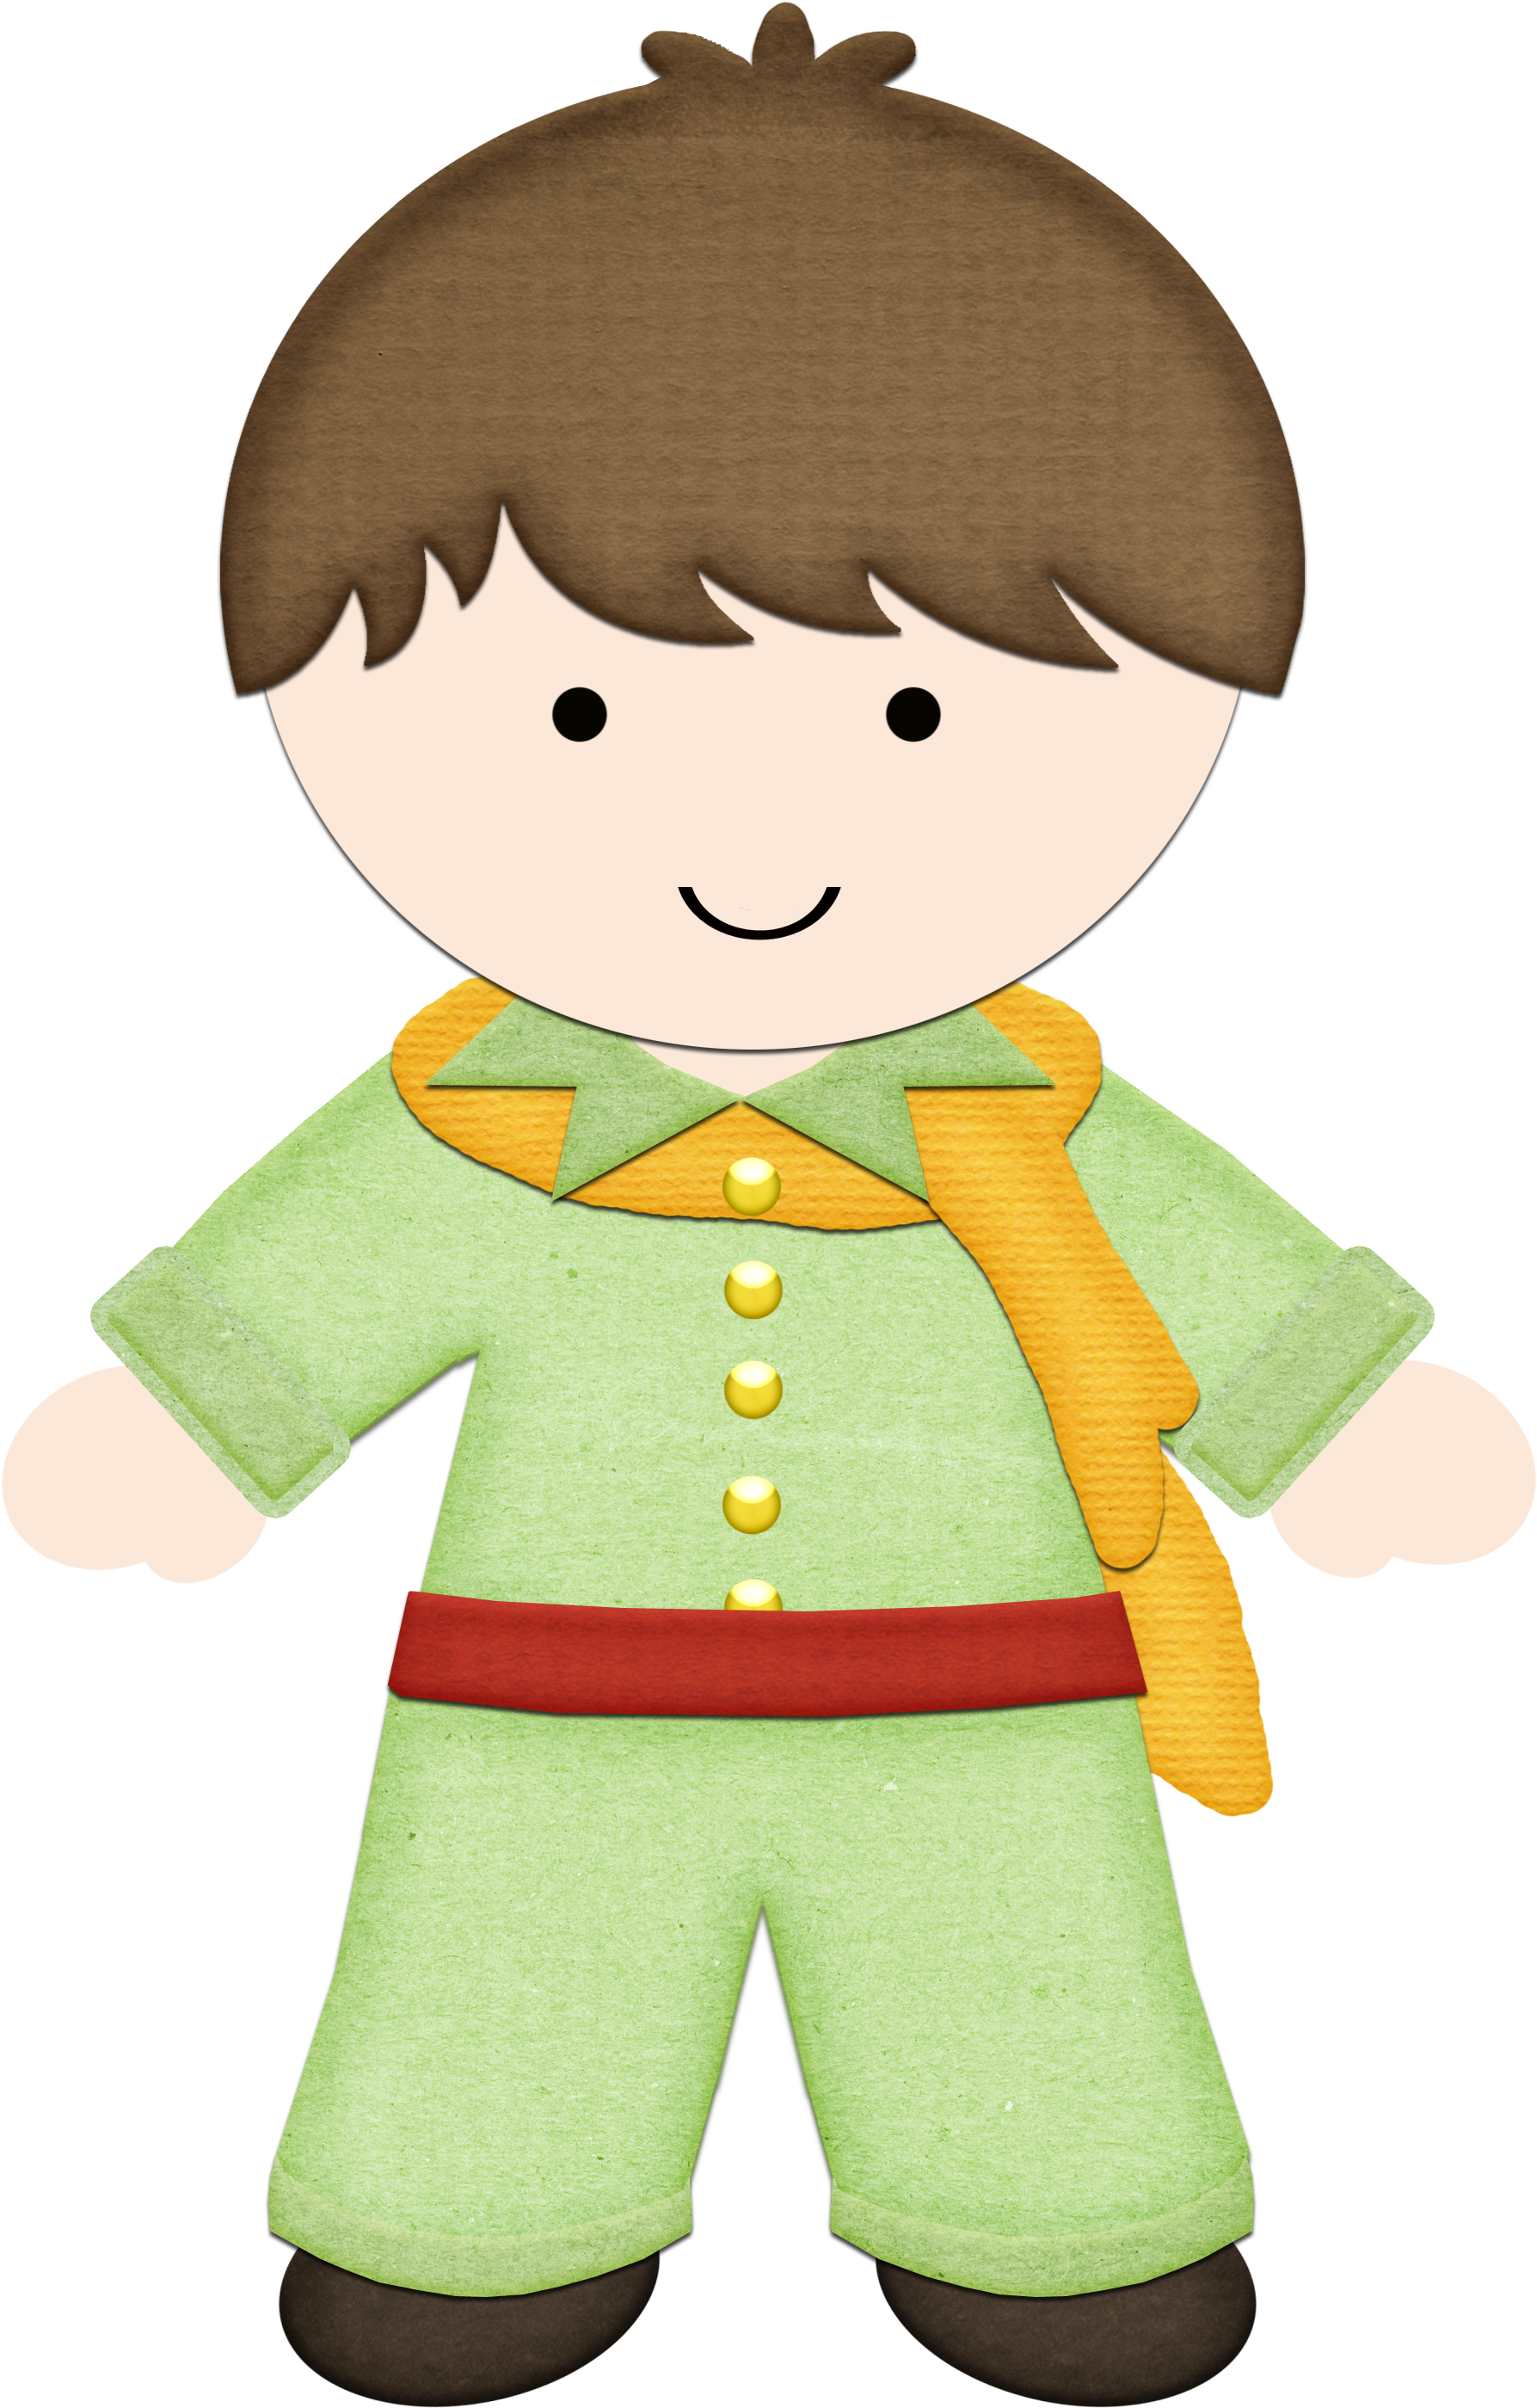 Cute Little Prince Clipart - Pequeno Principe Moreno Vetor (2095x3000)